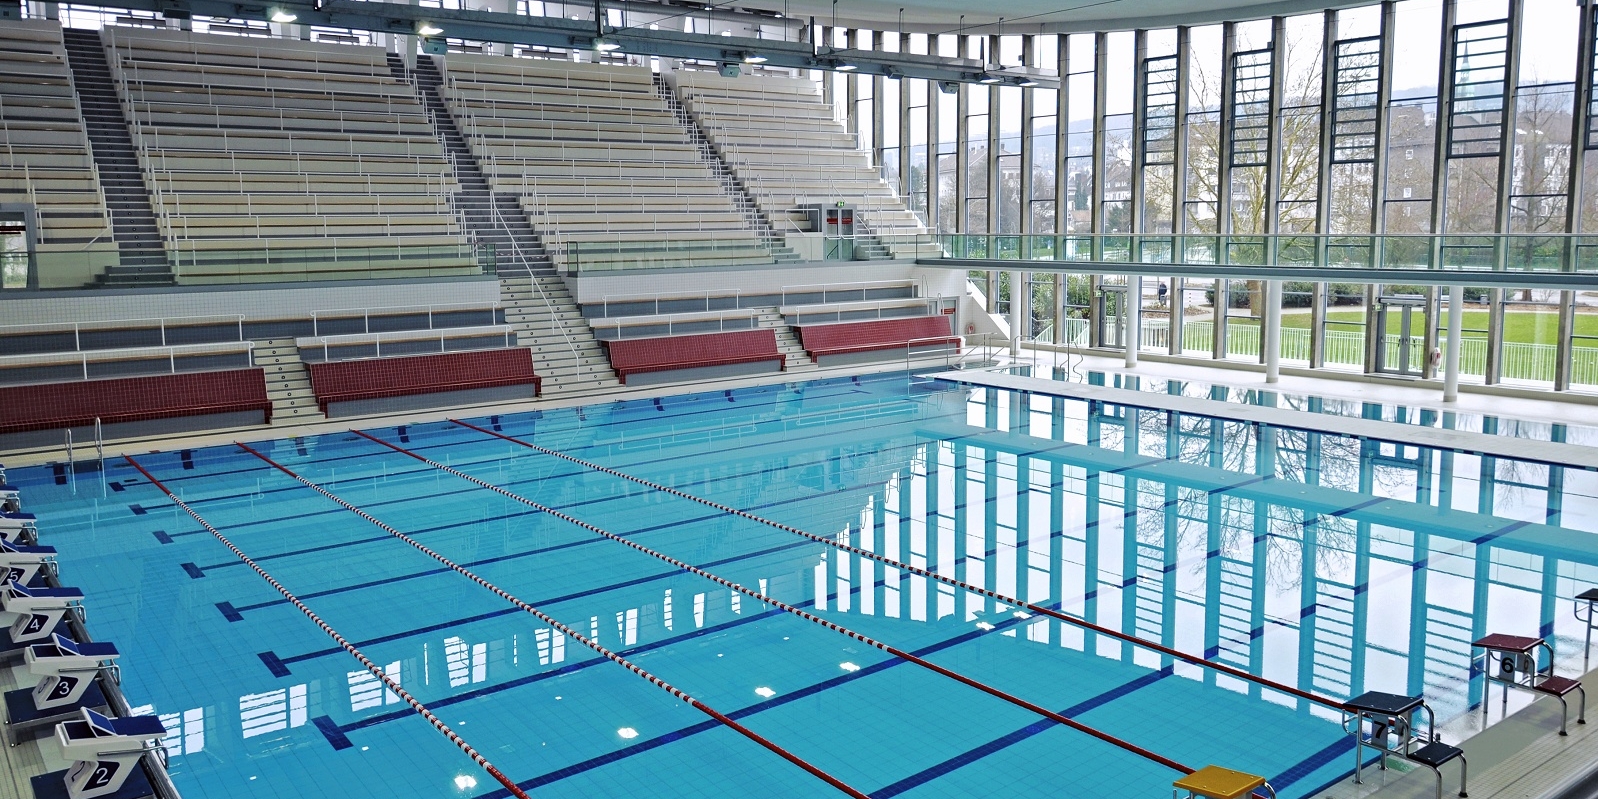 Große Schwimmhalle mit Sprungböcken, sowie eine große leere Tribüne für Zuschauer.